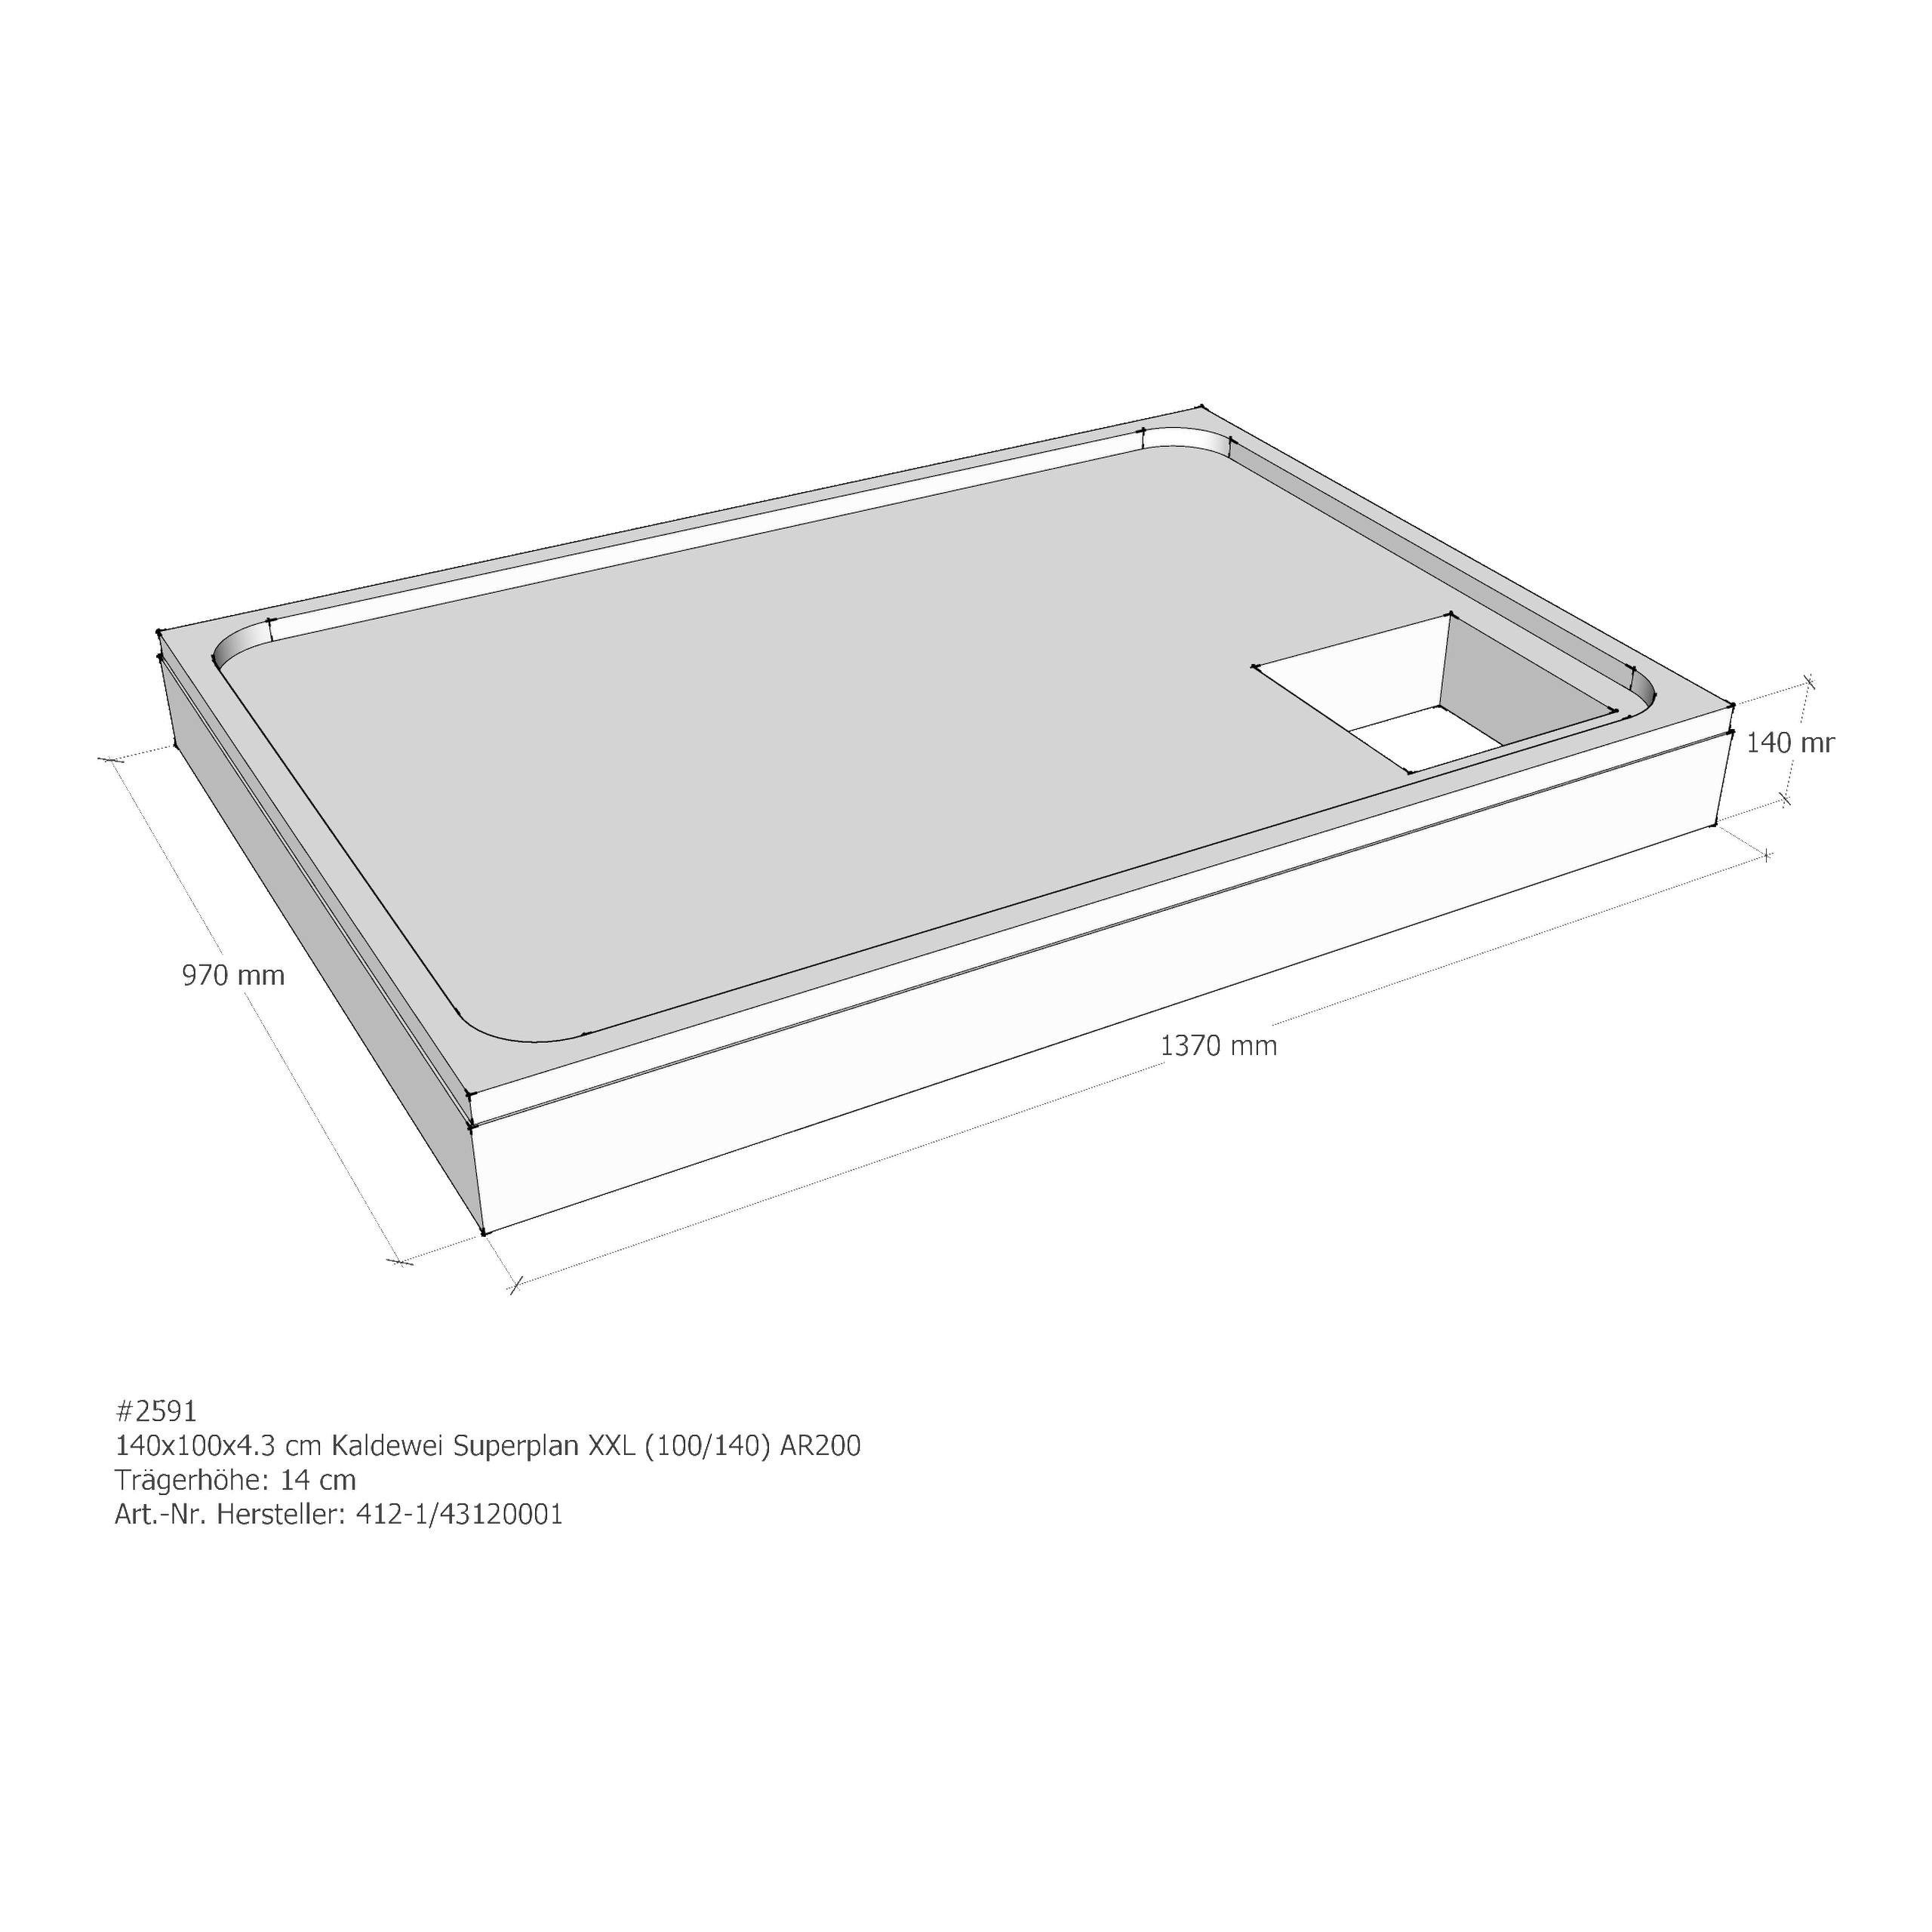 Duschwannenträger für Kaldewei Superplan XXL 140 × 100 × 4,3 cm